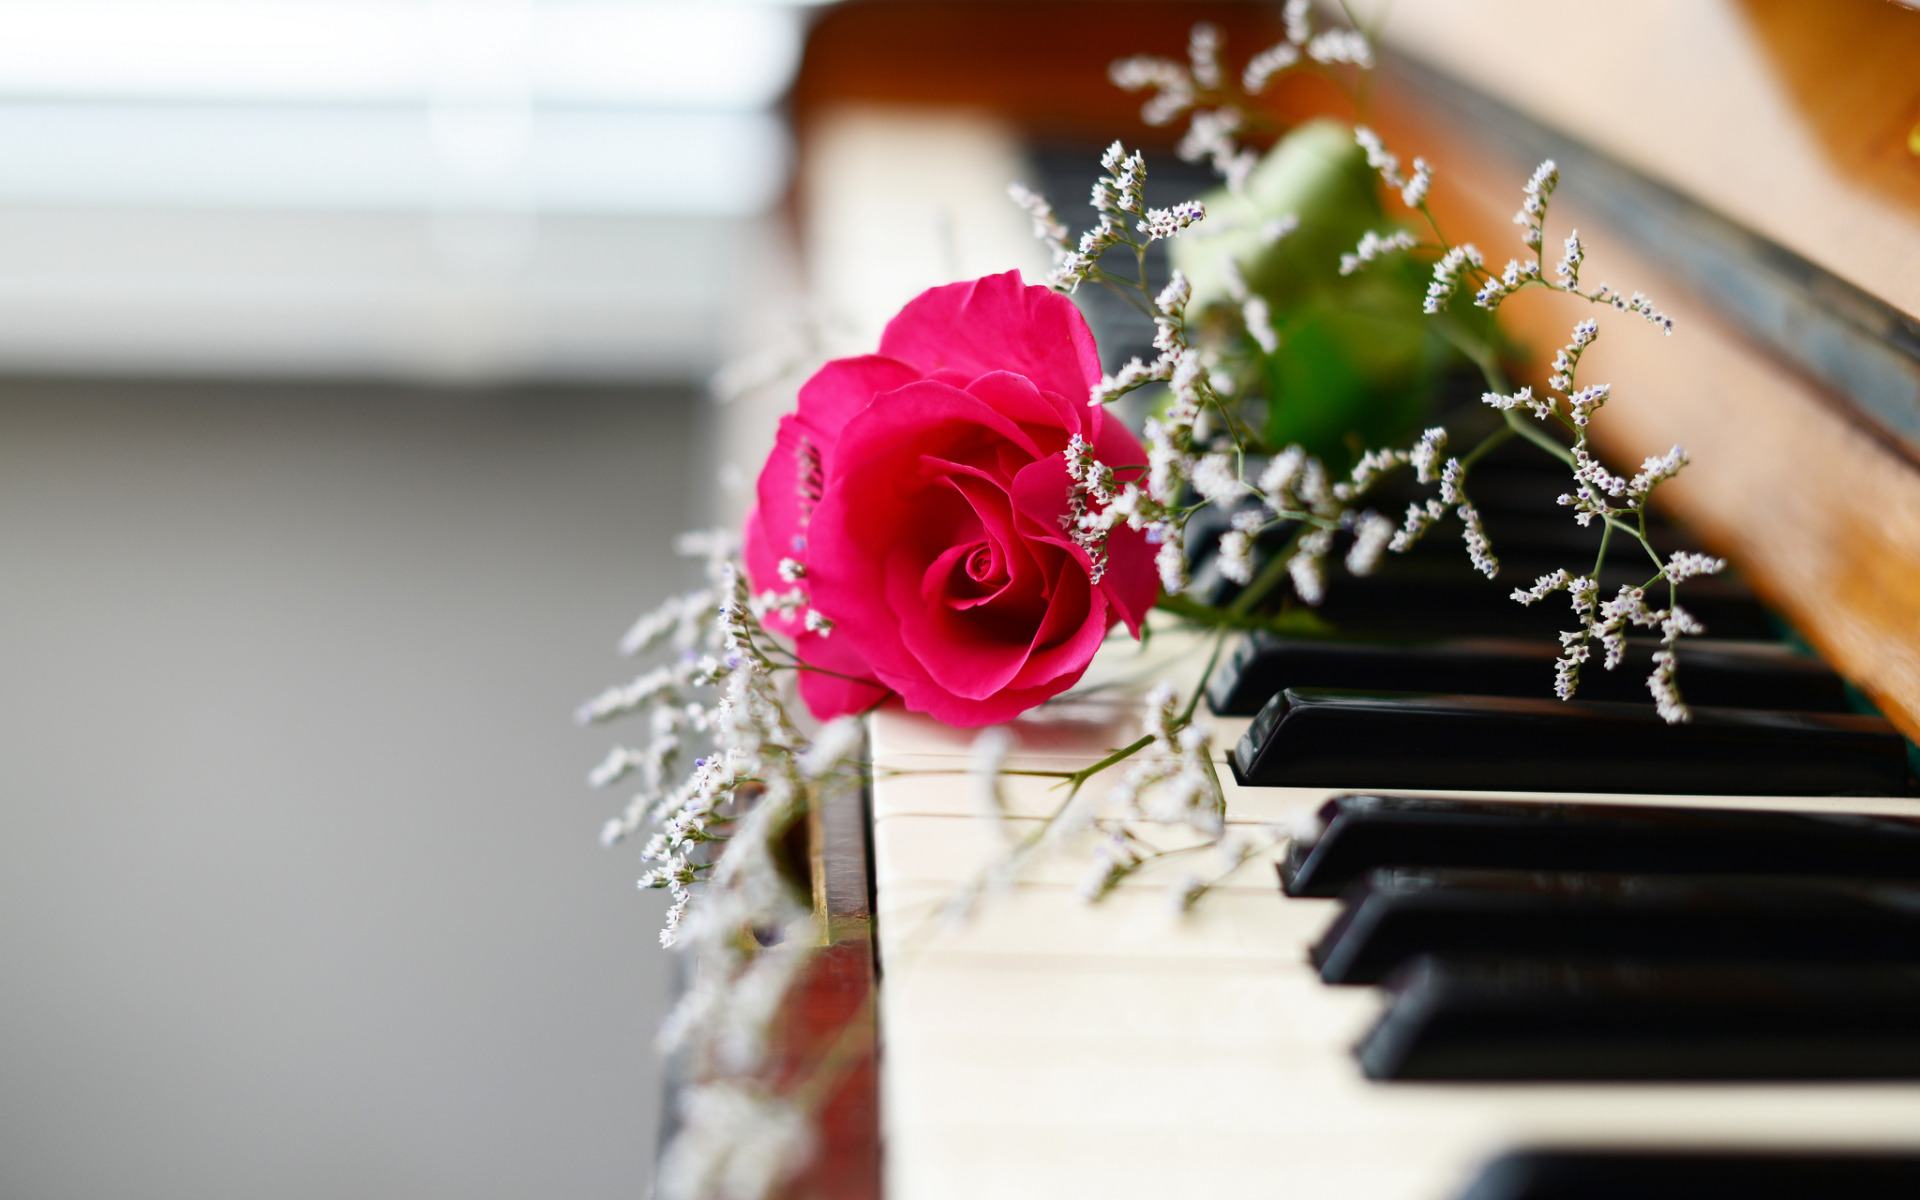 Музыкальный букет цветов. Картинки пианино и цветы. Цветы на рояле. Музыкальные инструменты и цветы. Красивая музыка россии